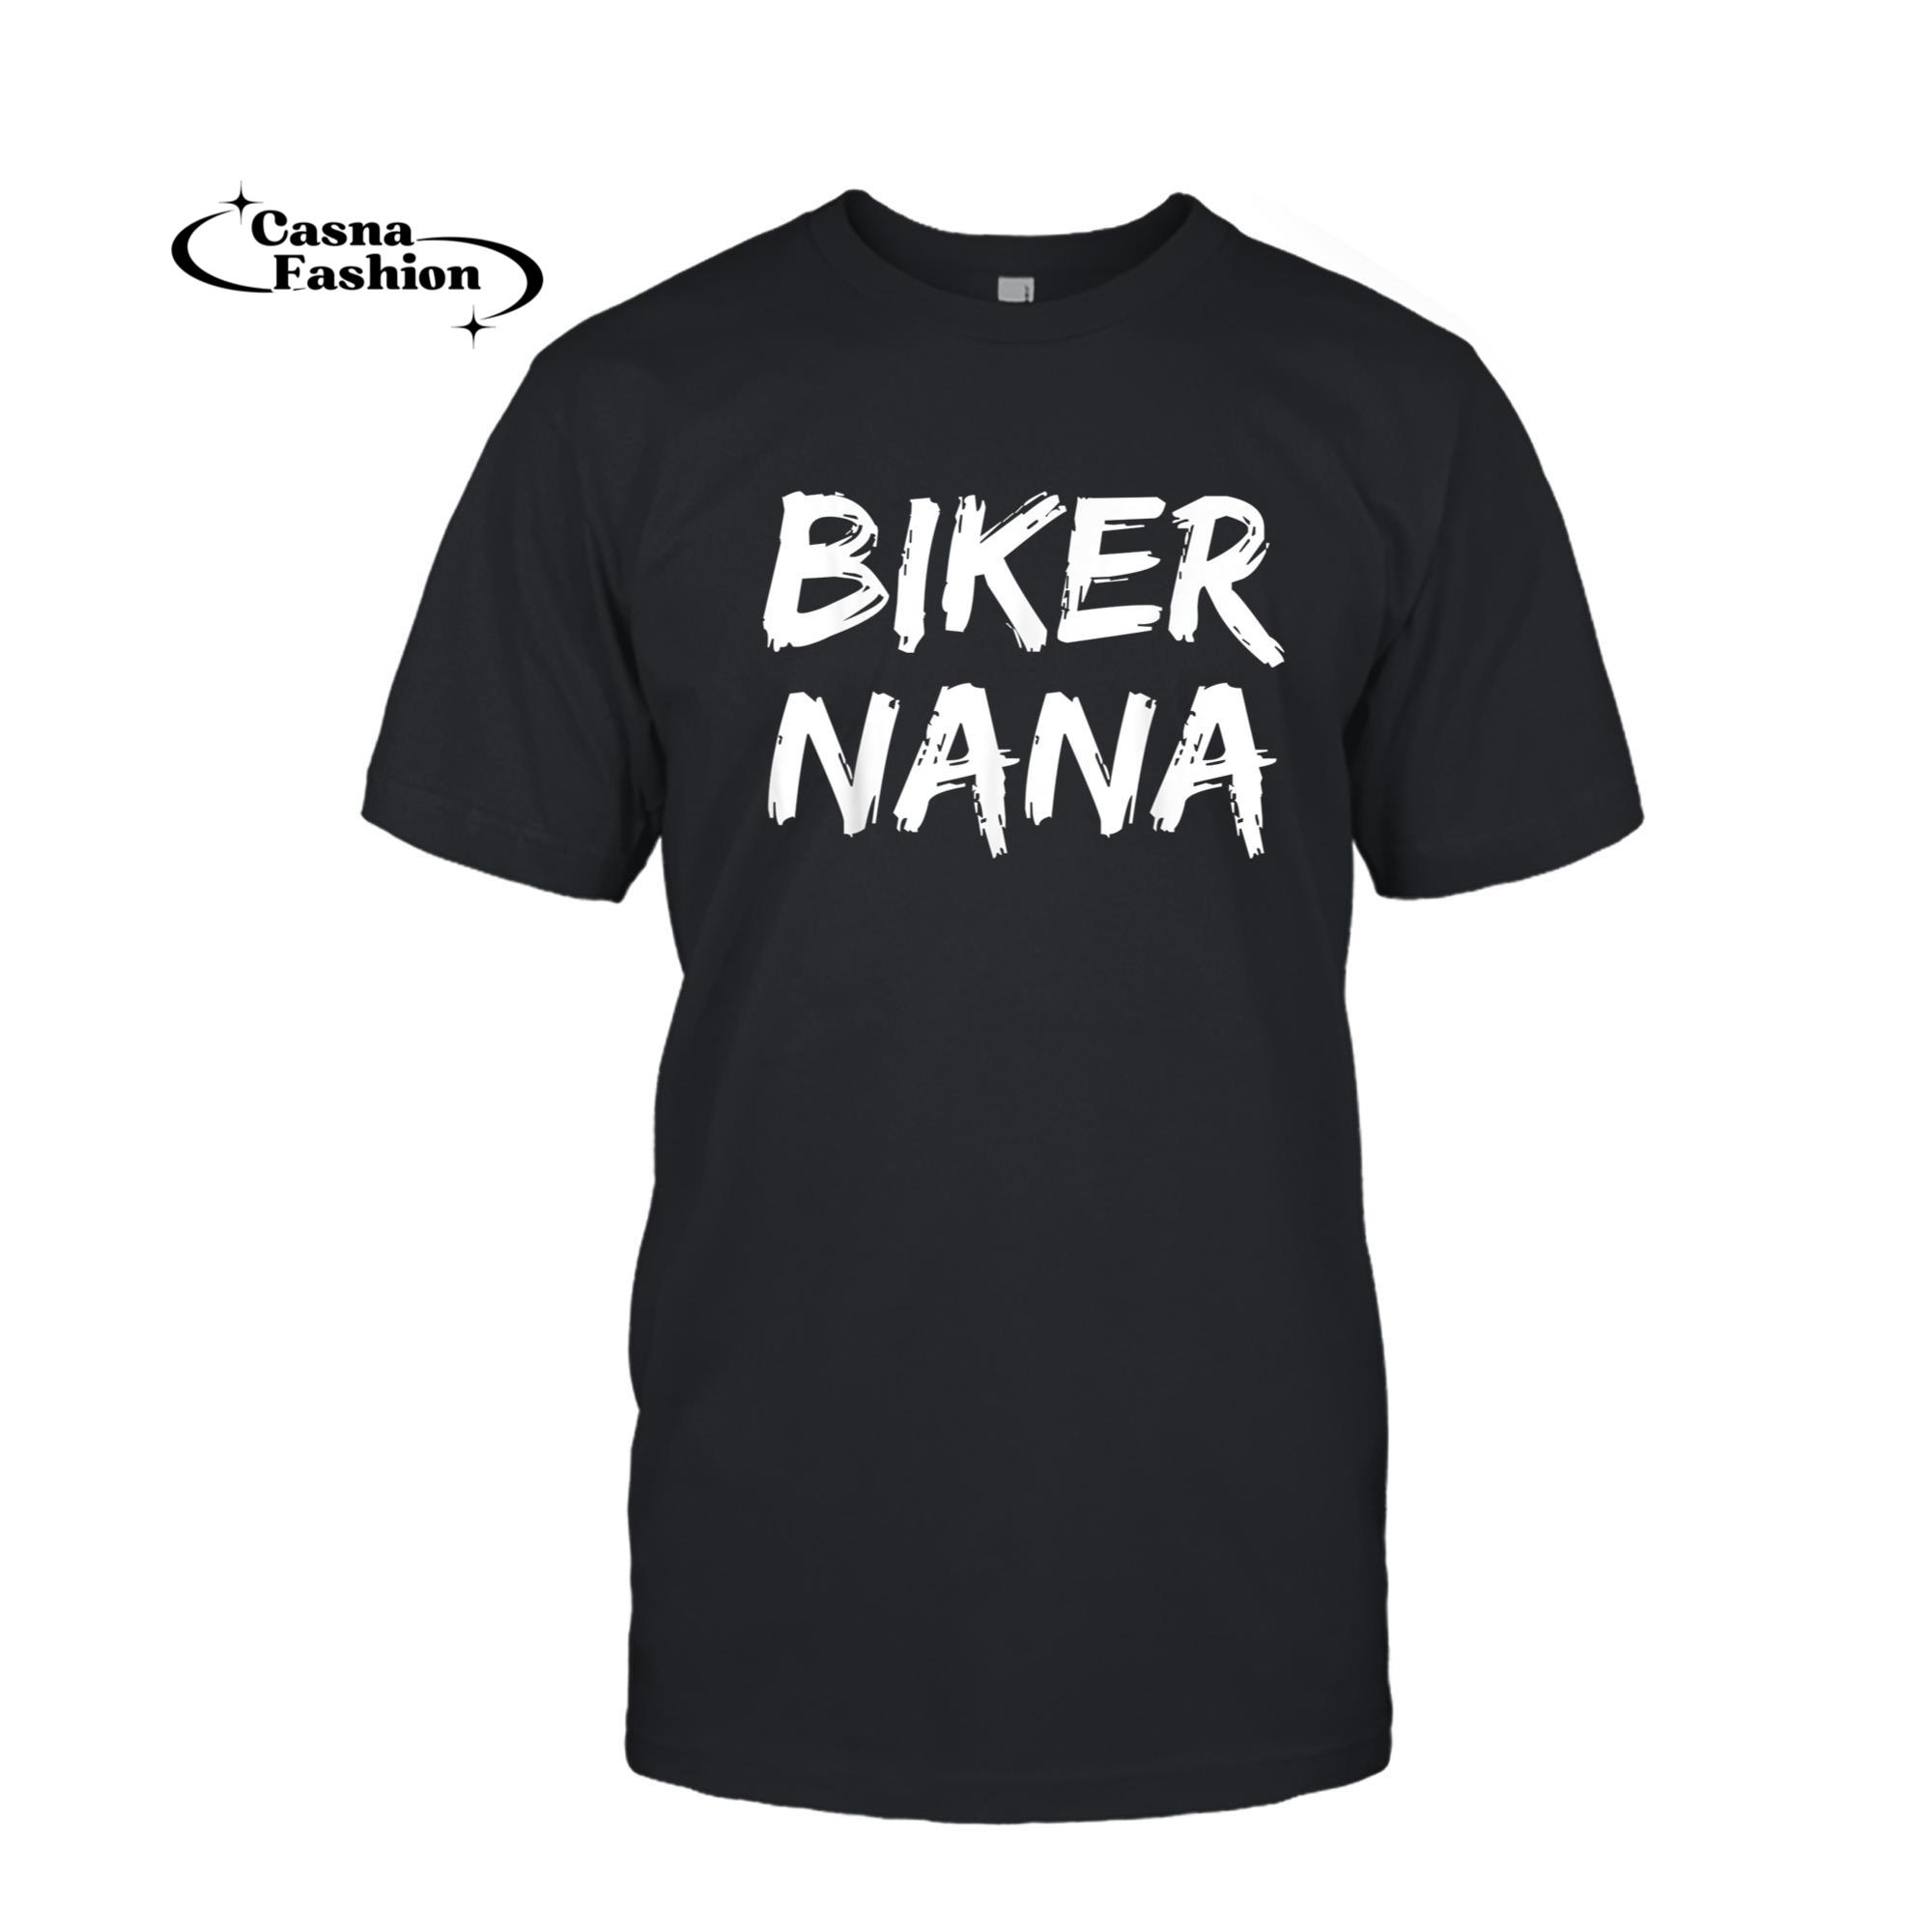 casnafashion_T-shirt_Biker Nana Shirt for Women Motorcycle Grandma Gift Shirt_T-shirt_Black